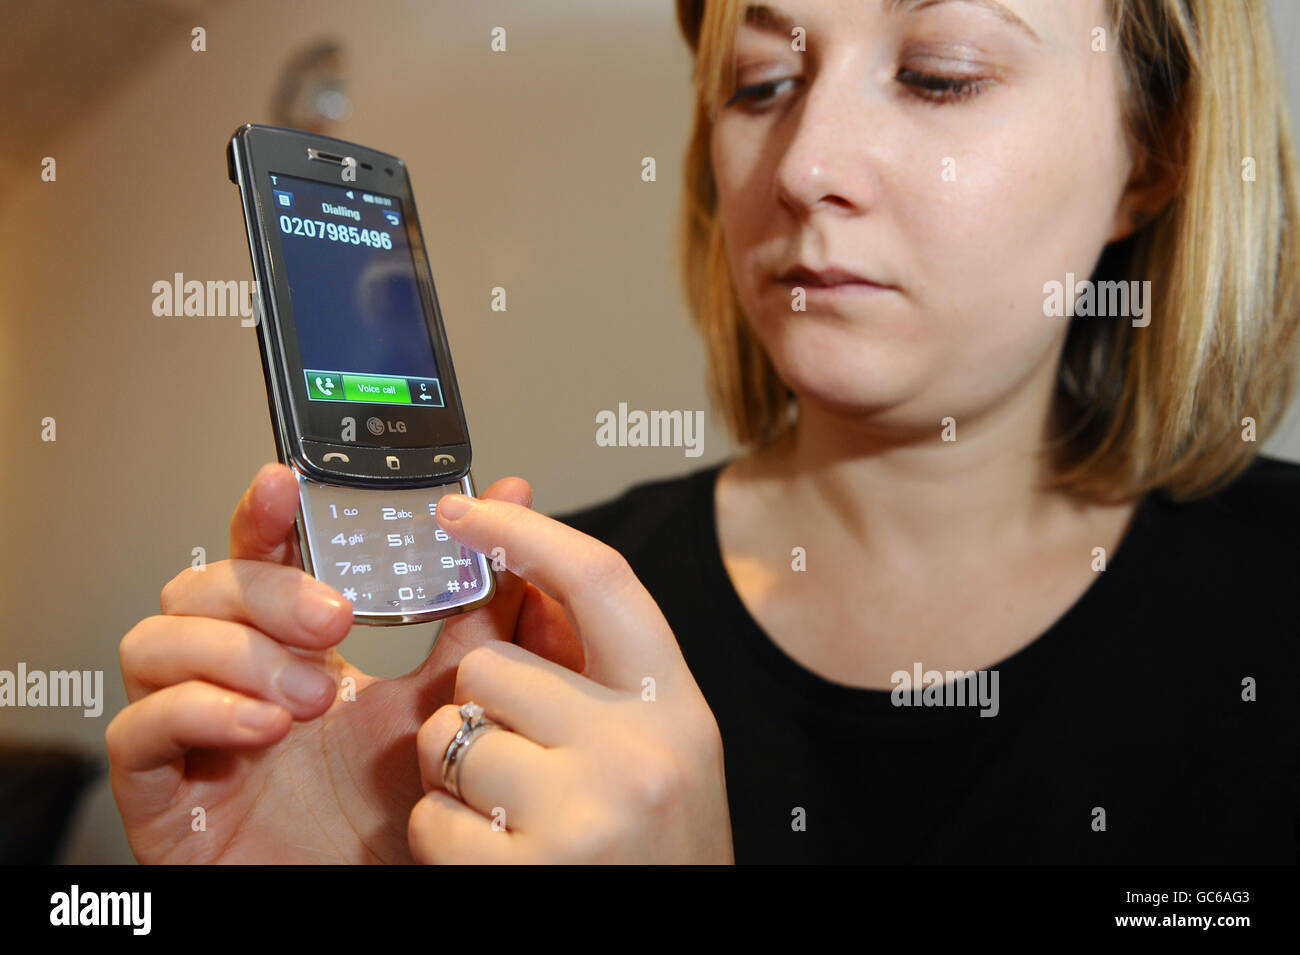 Téléphone portable LG GD900 avec clavier transparent Photo Stock - Alamy